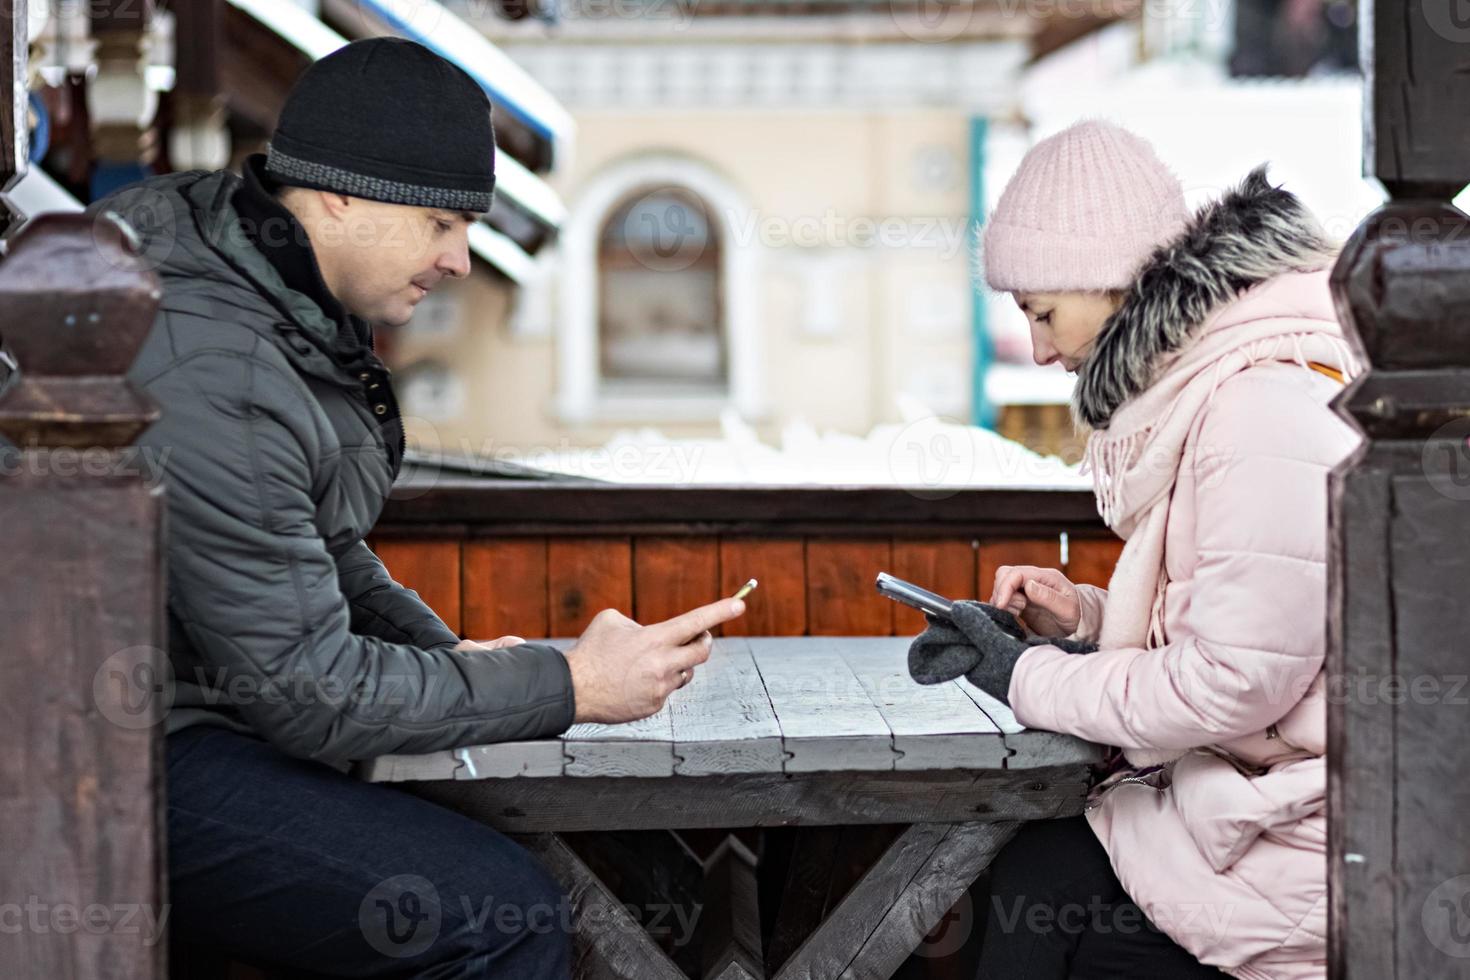 een stel wacht op hun bestelling voor de lunch in een straatcafé, sms'en via de telefoon. communicatie met mensen op een smartphone. foto